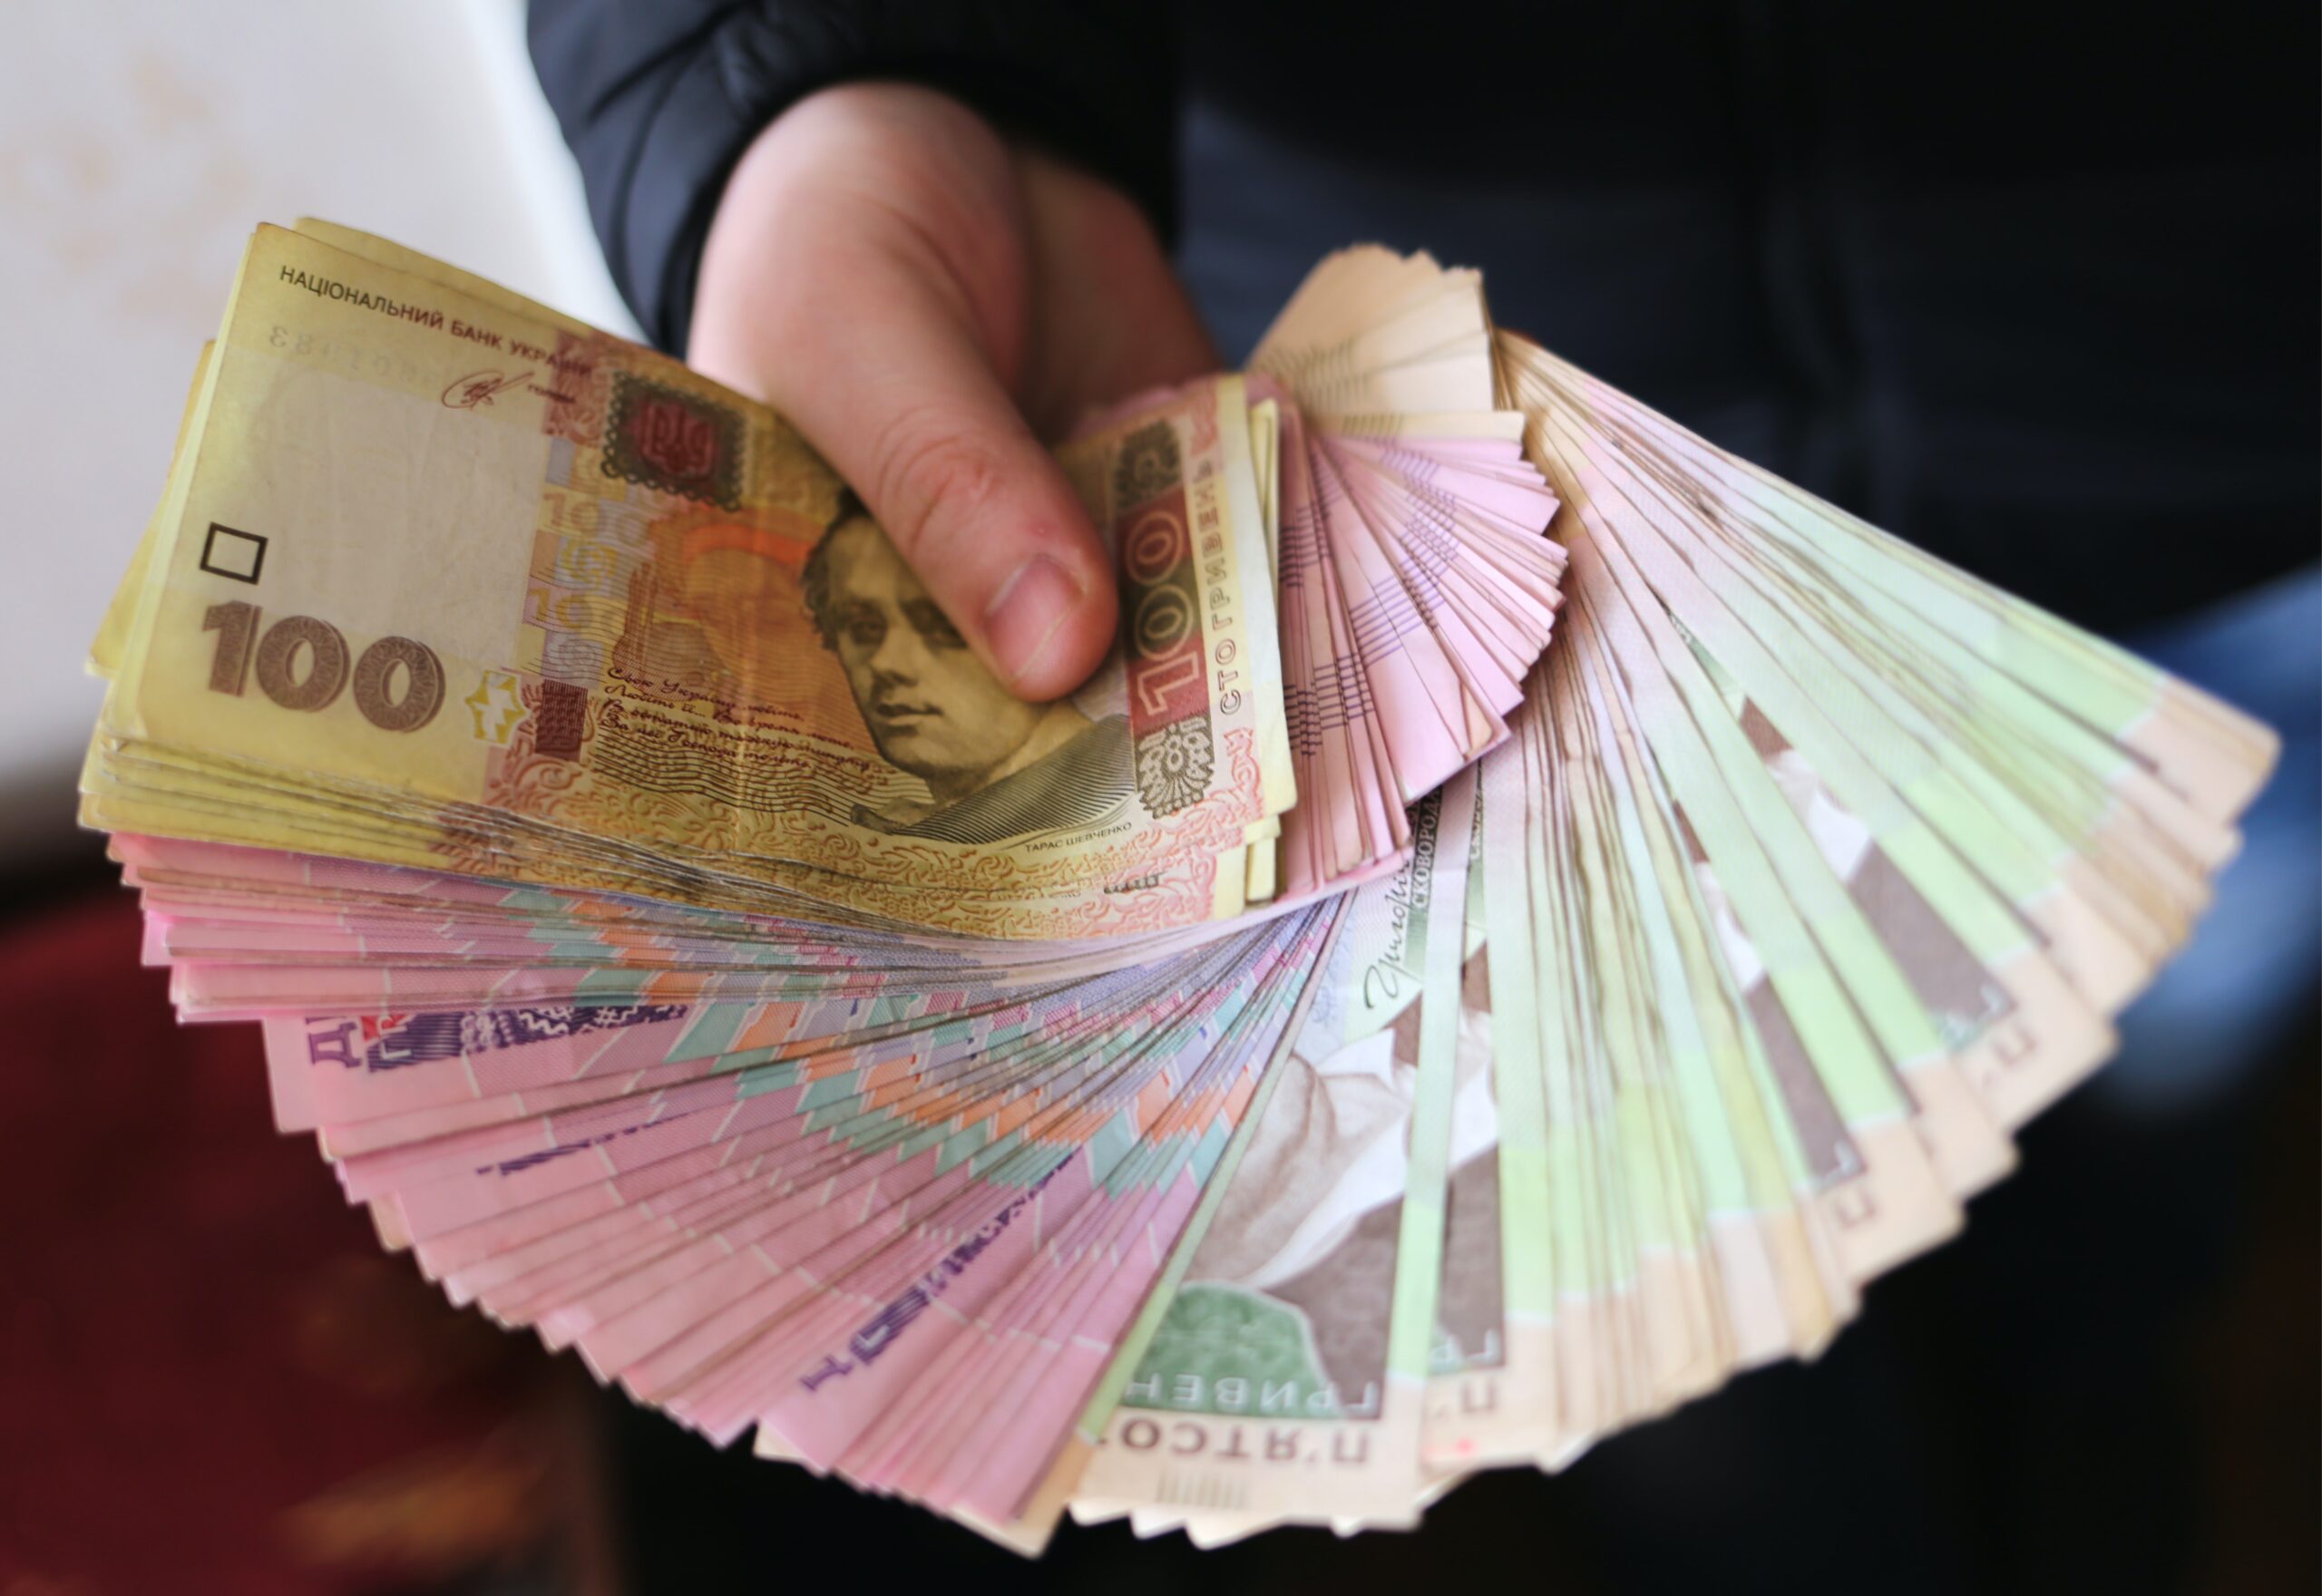 Запорожские предприятия задолжали своим работникам почти 80 миллионов гривен